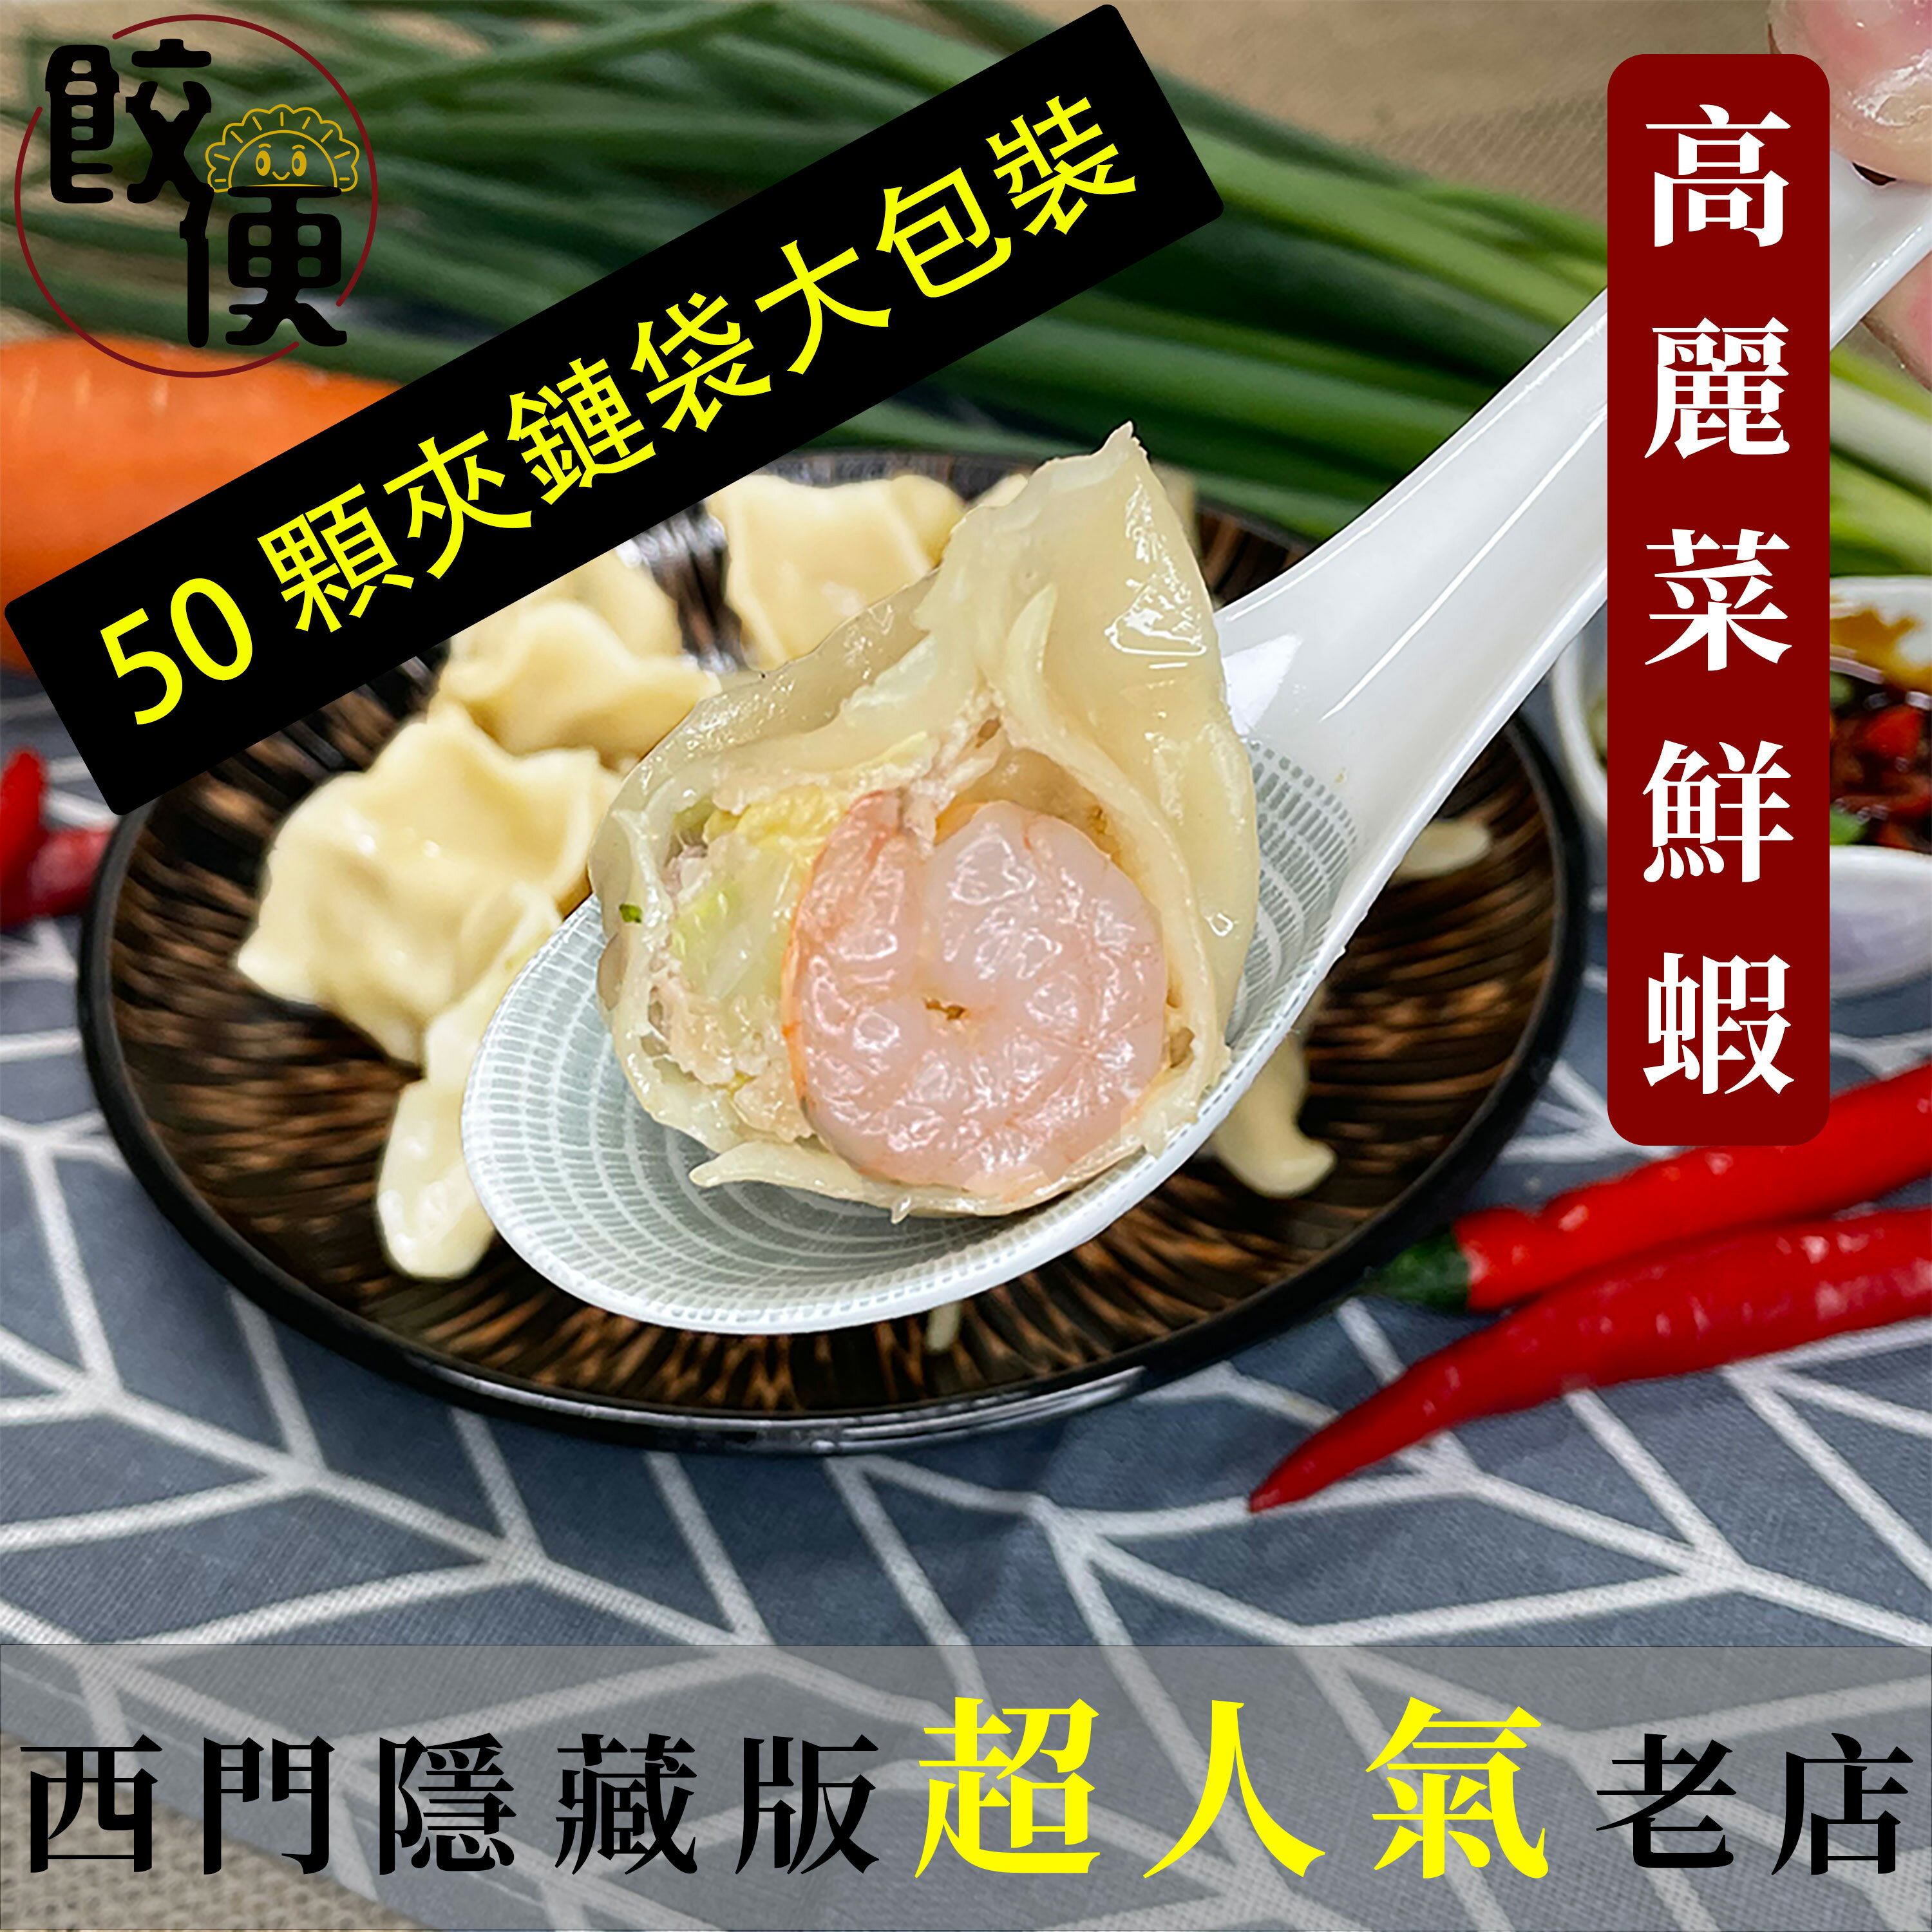 高麗菜鮮蝦水餃 50 顆/包 ★夾鏈袋包裝★ 實惠又方便